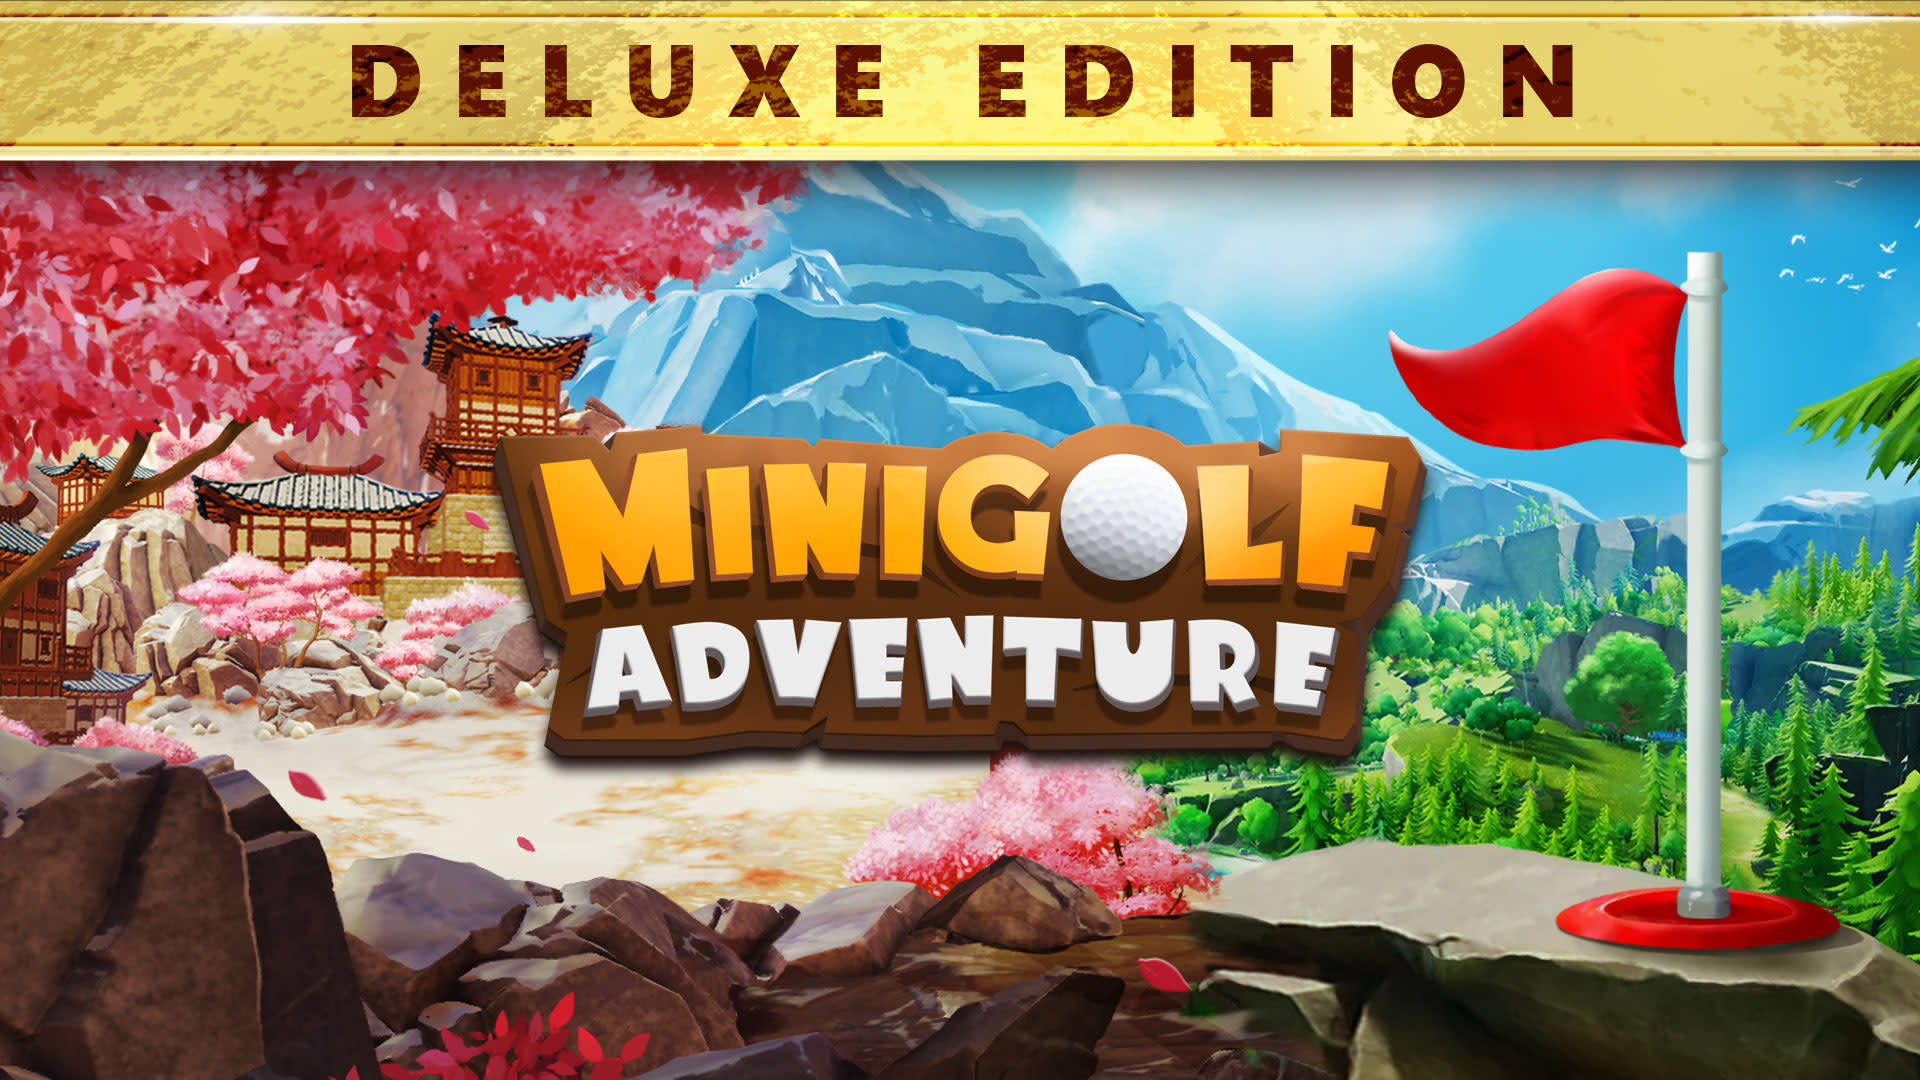 Minigolf Adventure Deluxe Edition